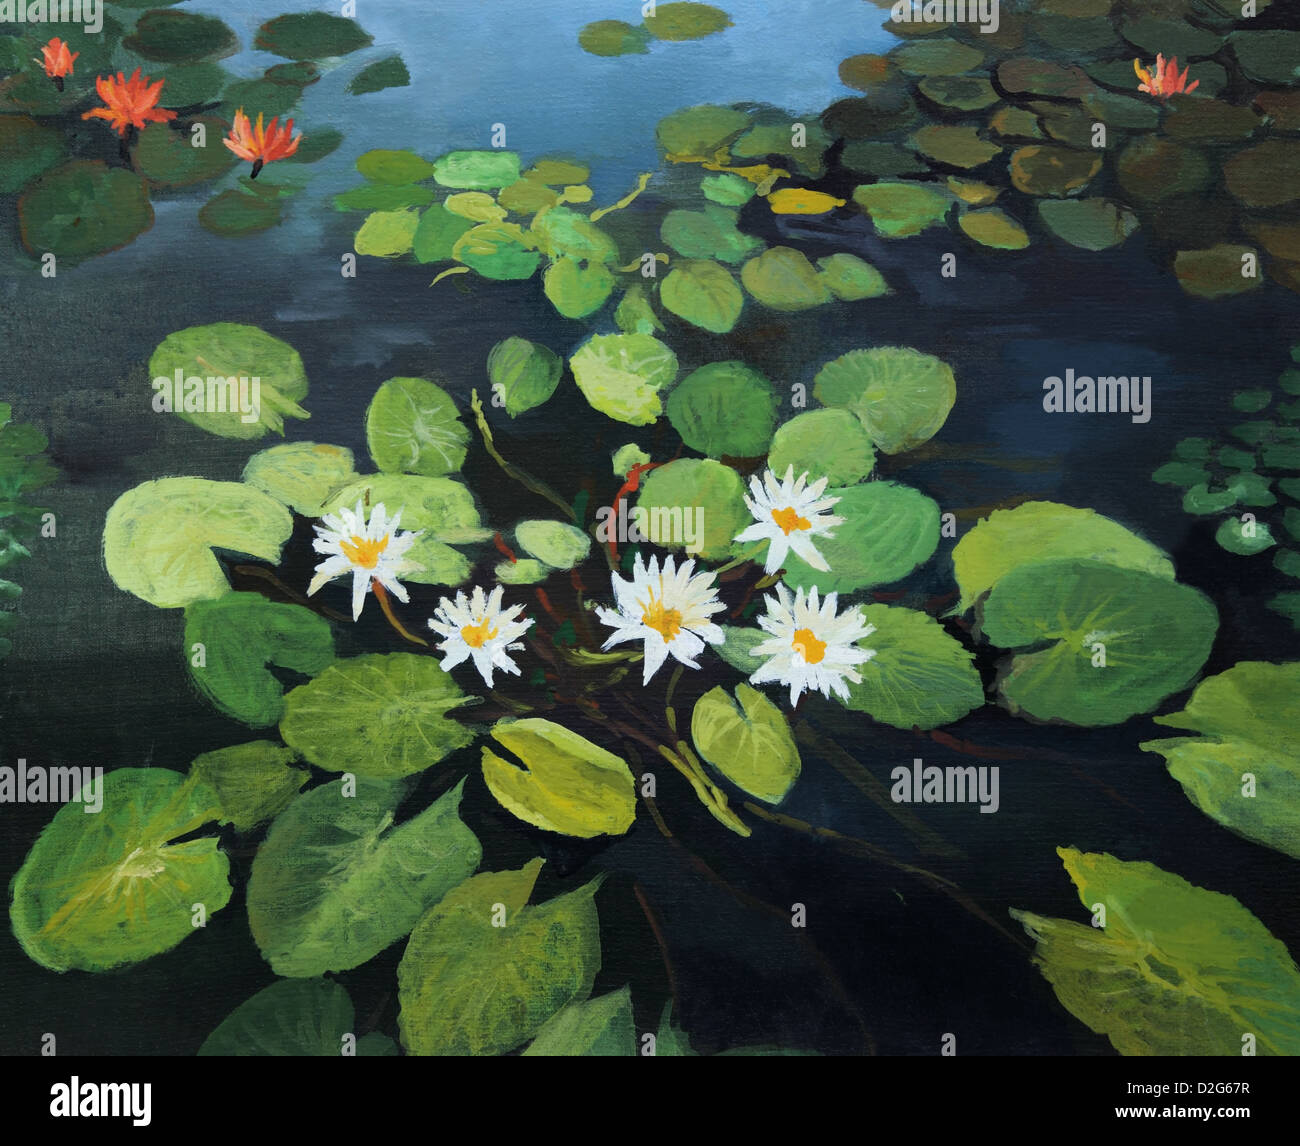 Une peinture à l'huile sur toile d'un étang pittoresque avec de beaux nénuphars, fleurs de lotus et le ciel reflet dans l'eau. Banque D'Images